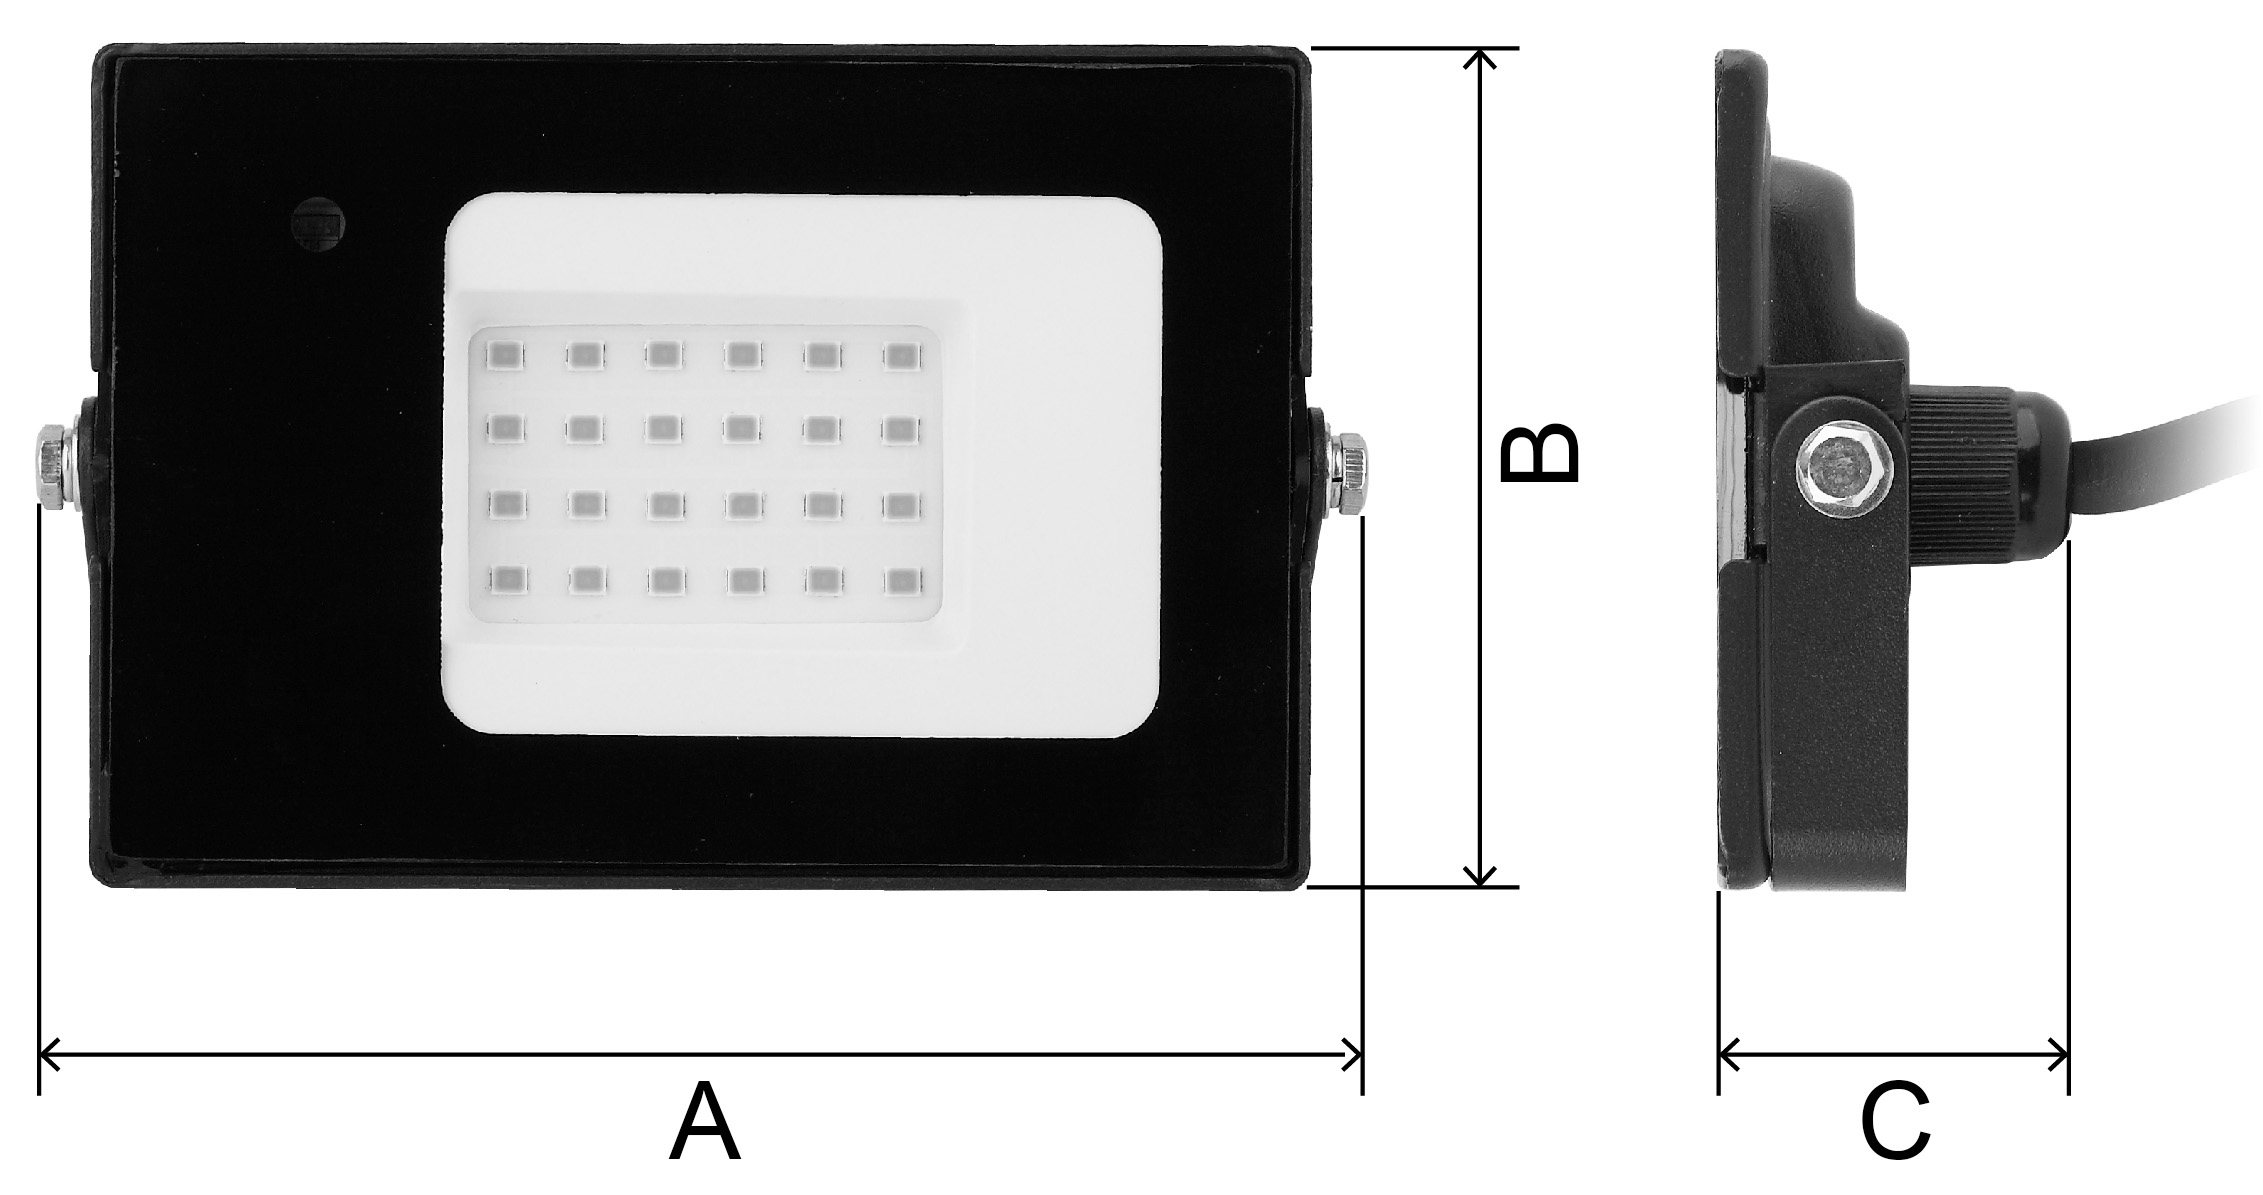 Прожектор светодиодный ЭРА LPR-041 30 Вт с датчиком движения, цветовая температура 6500 К, световой поток 2100 Лм, IP65, форма – прямоугольник, цвет - черный